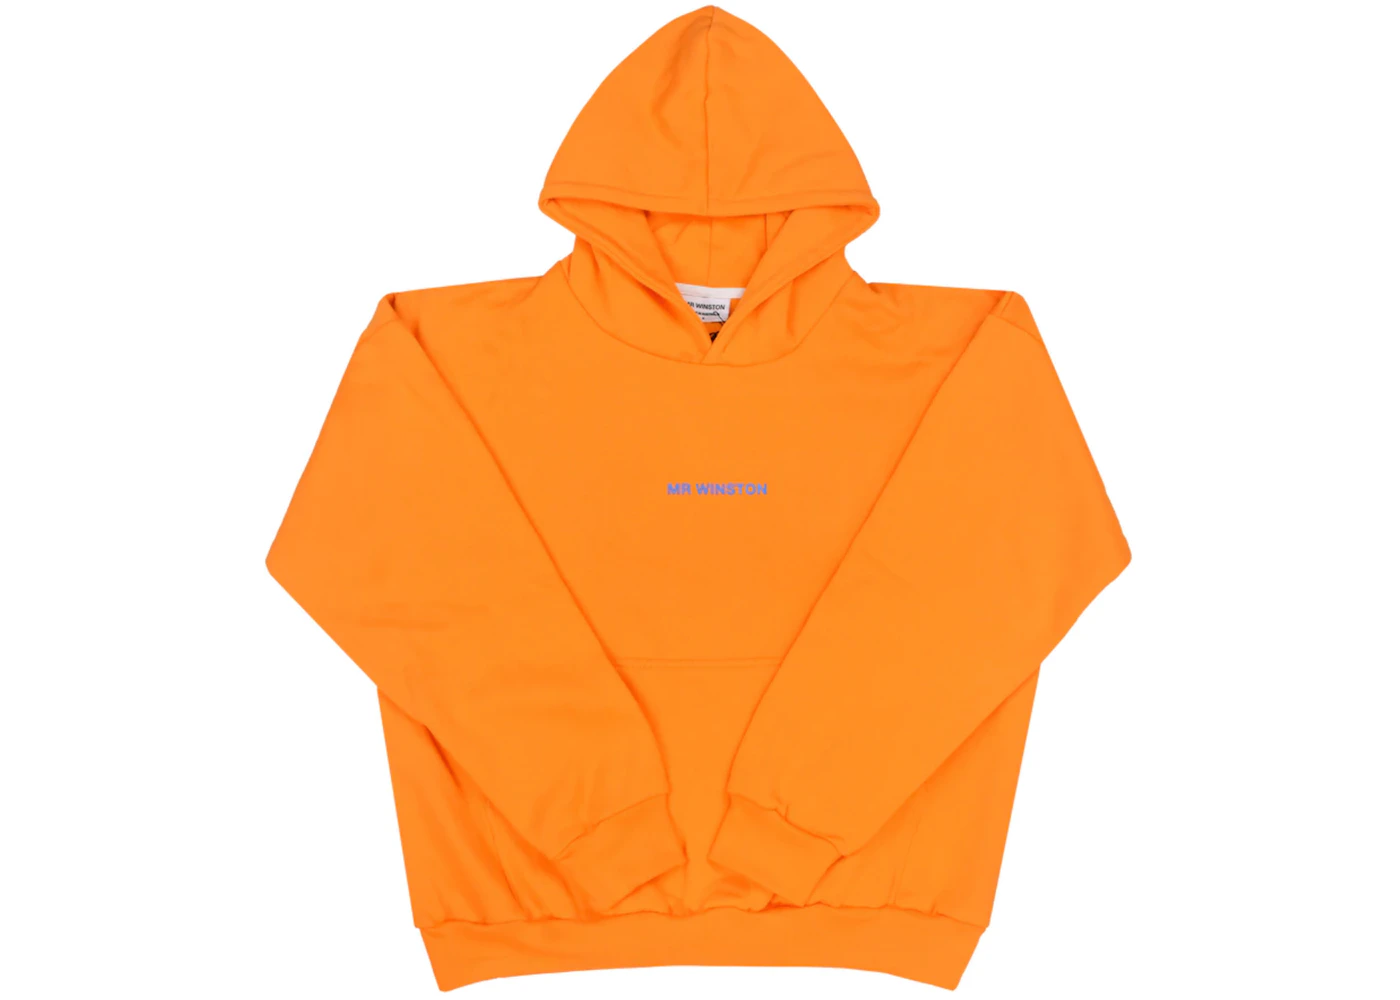 Mr Winston Puff Hooded Sweatshirt Orange - US